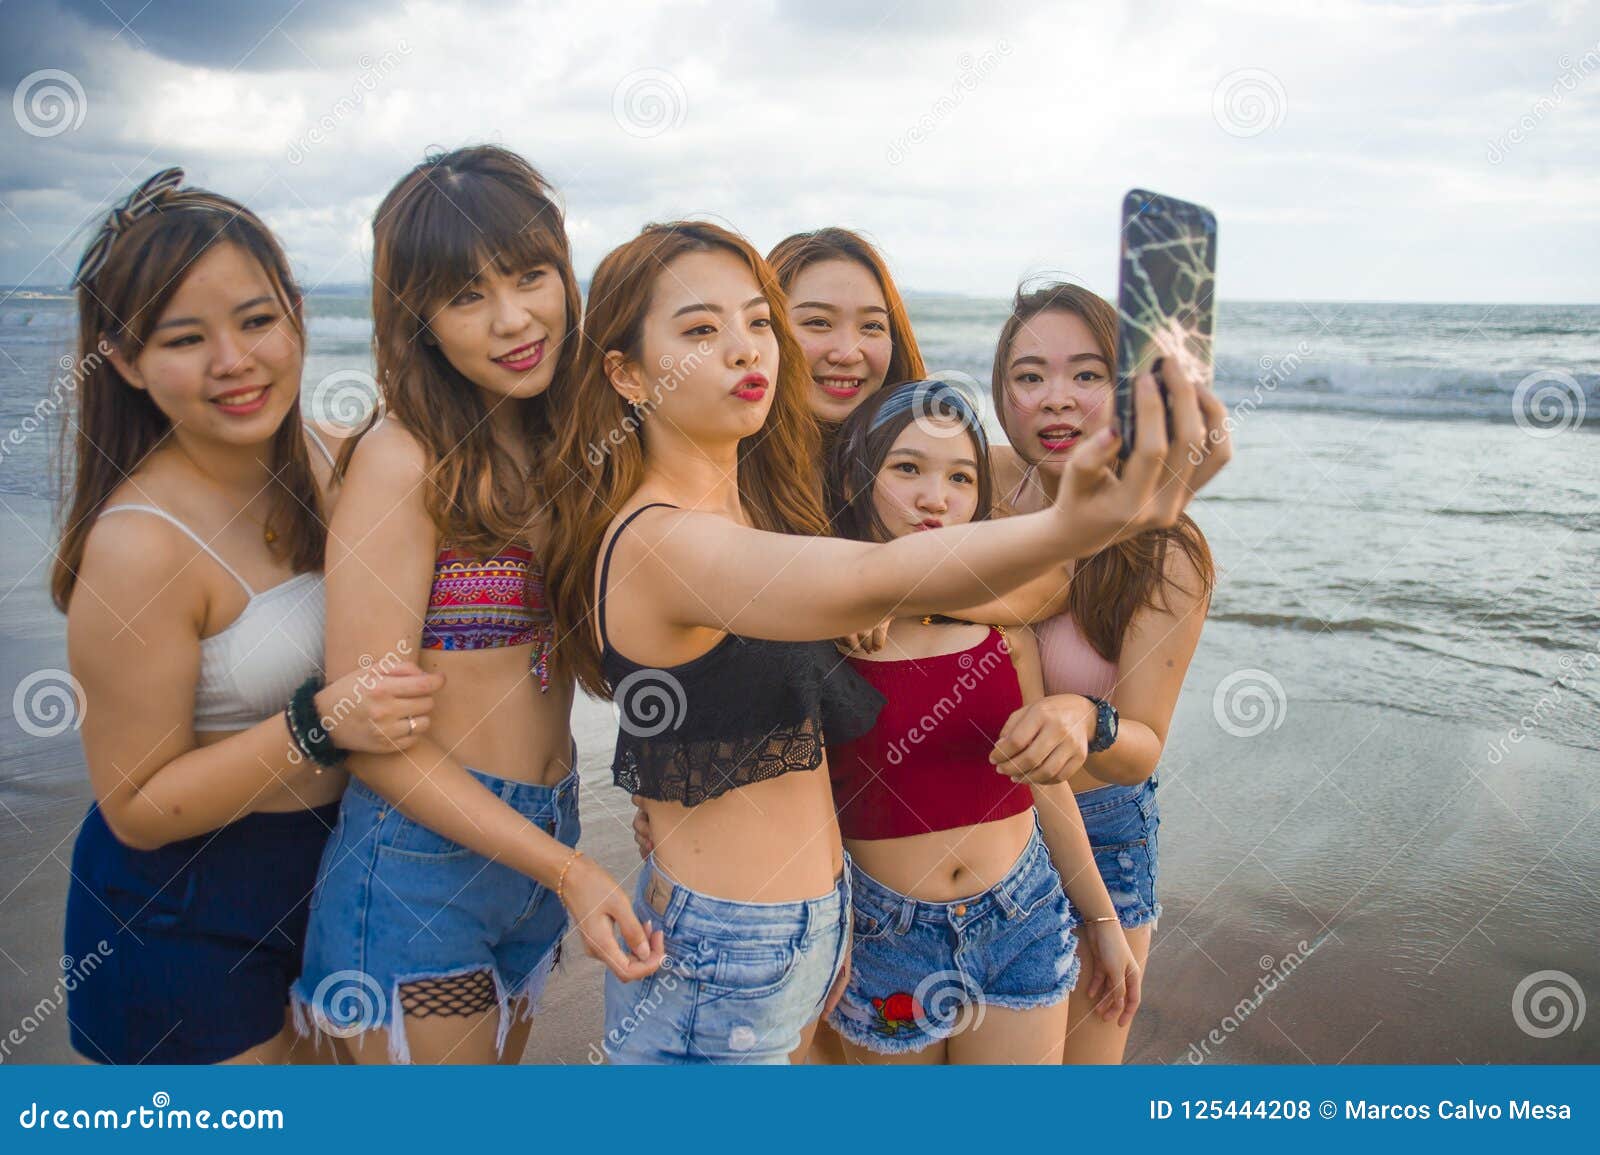 korean teen self pics free pics and video